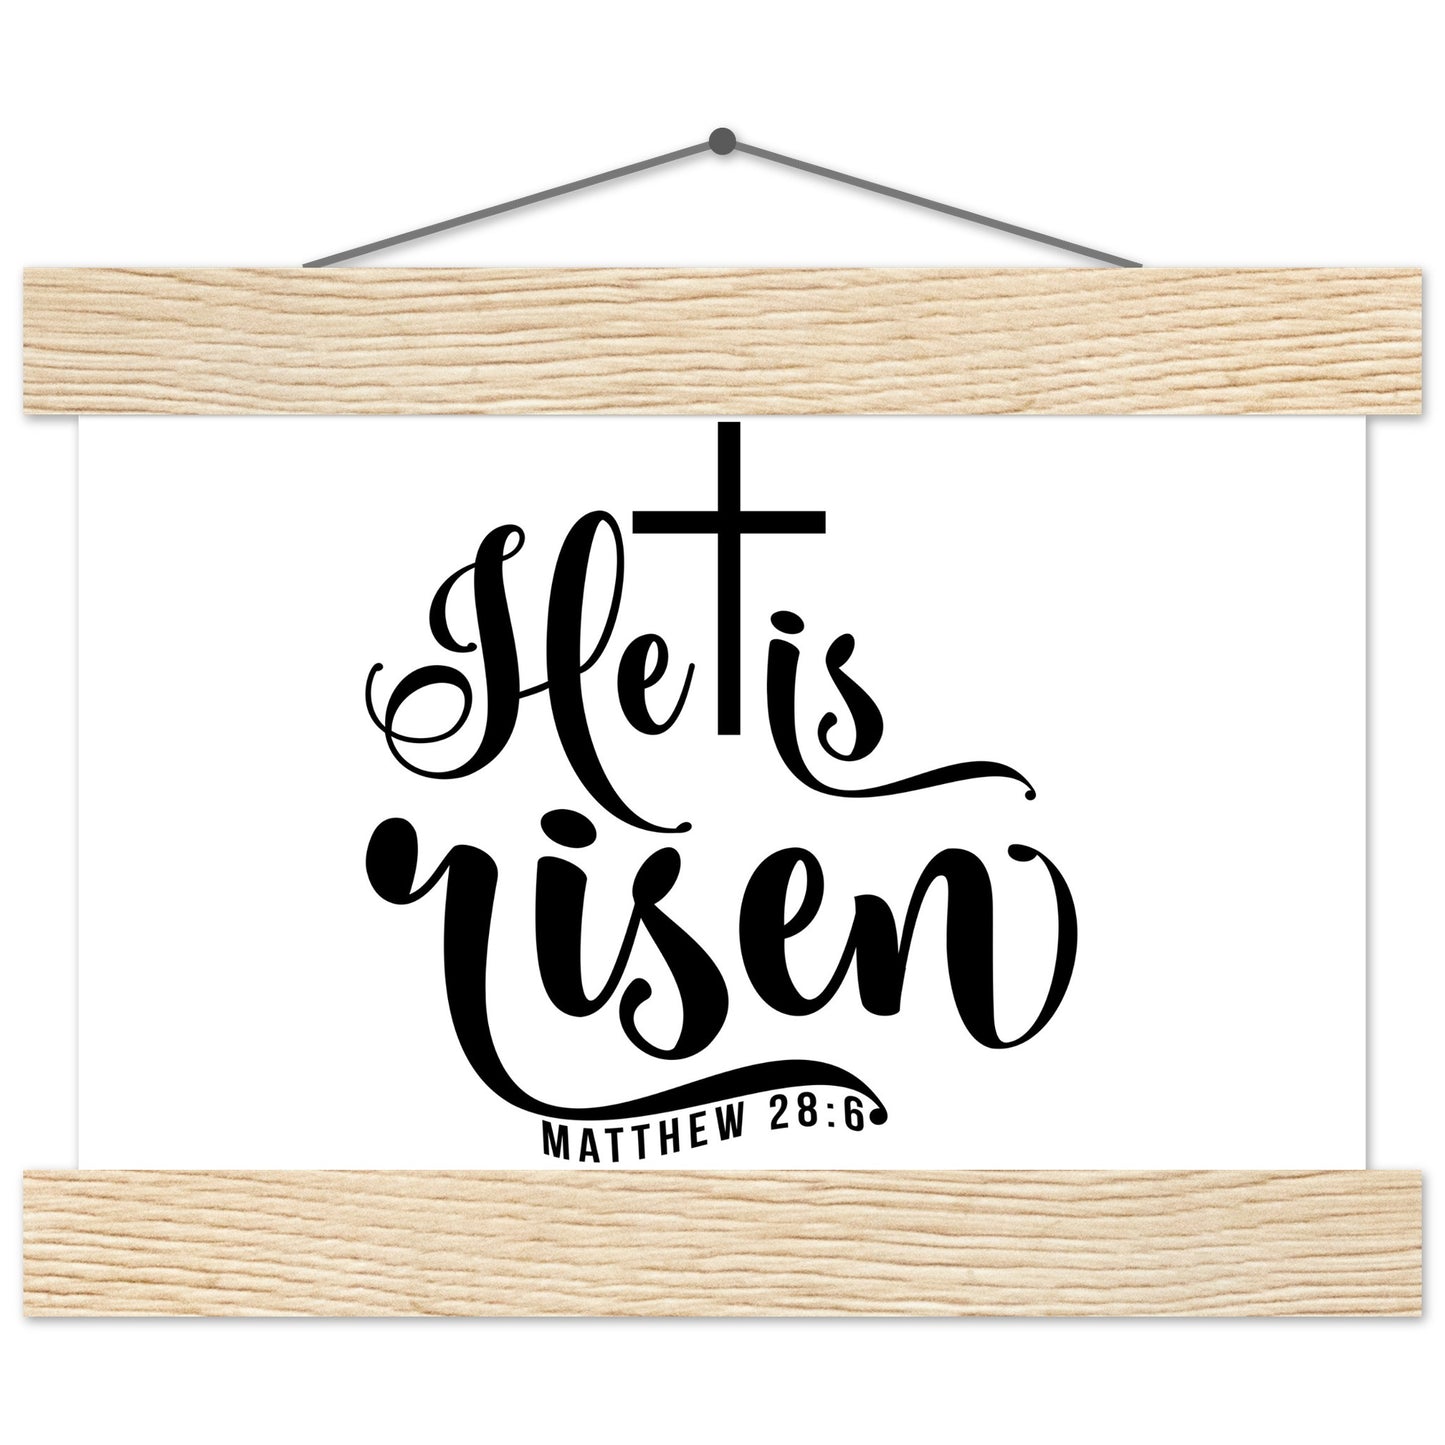 He is Risen (Matthew 20:6) - Premium Matte Paper Poster with Hanger